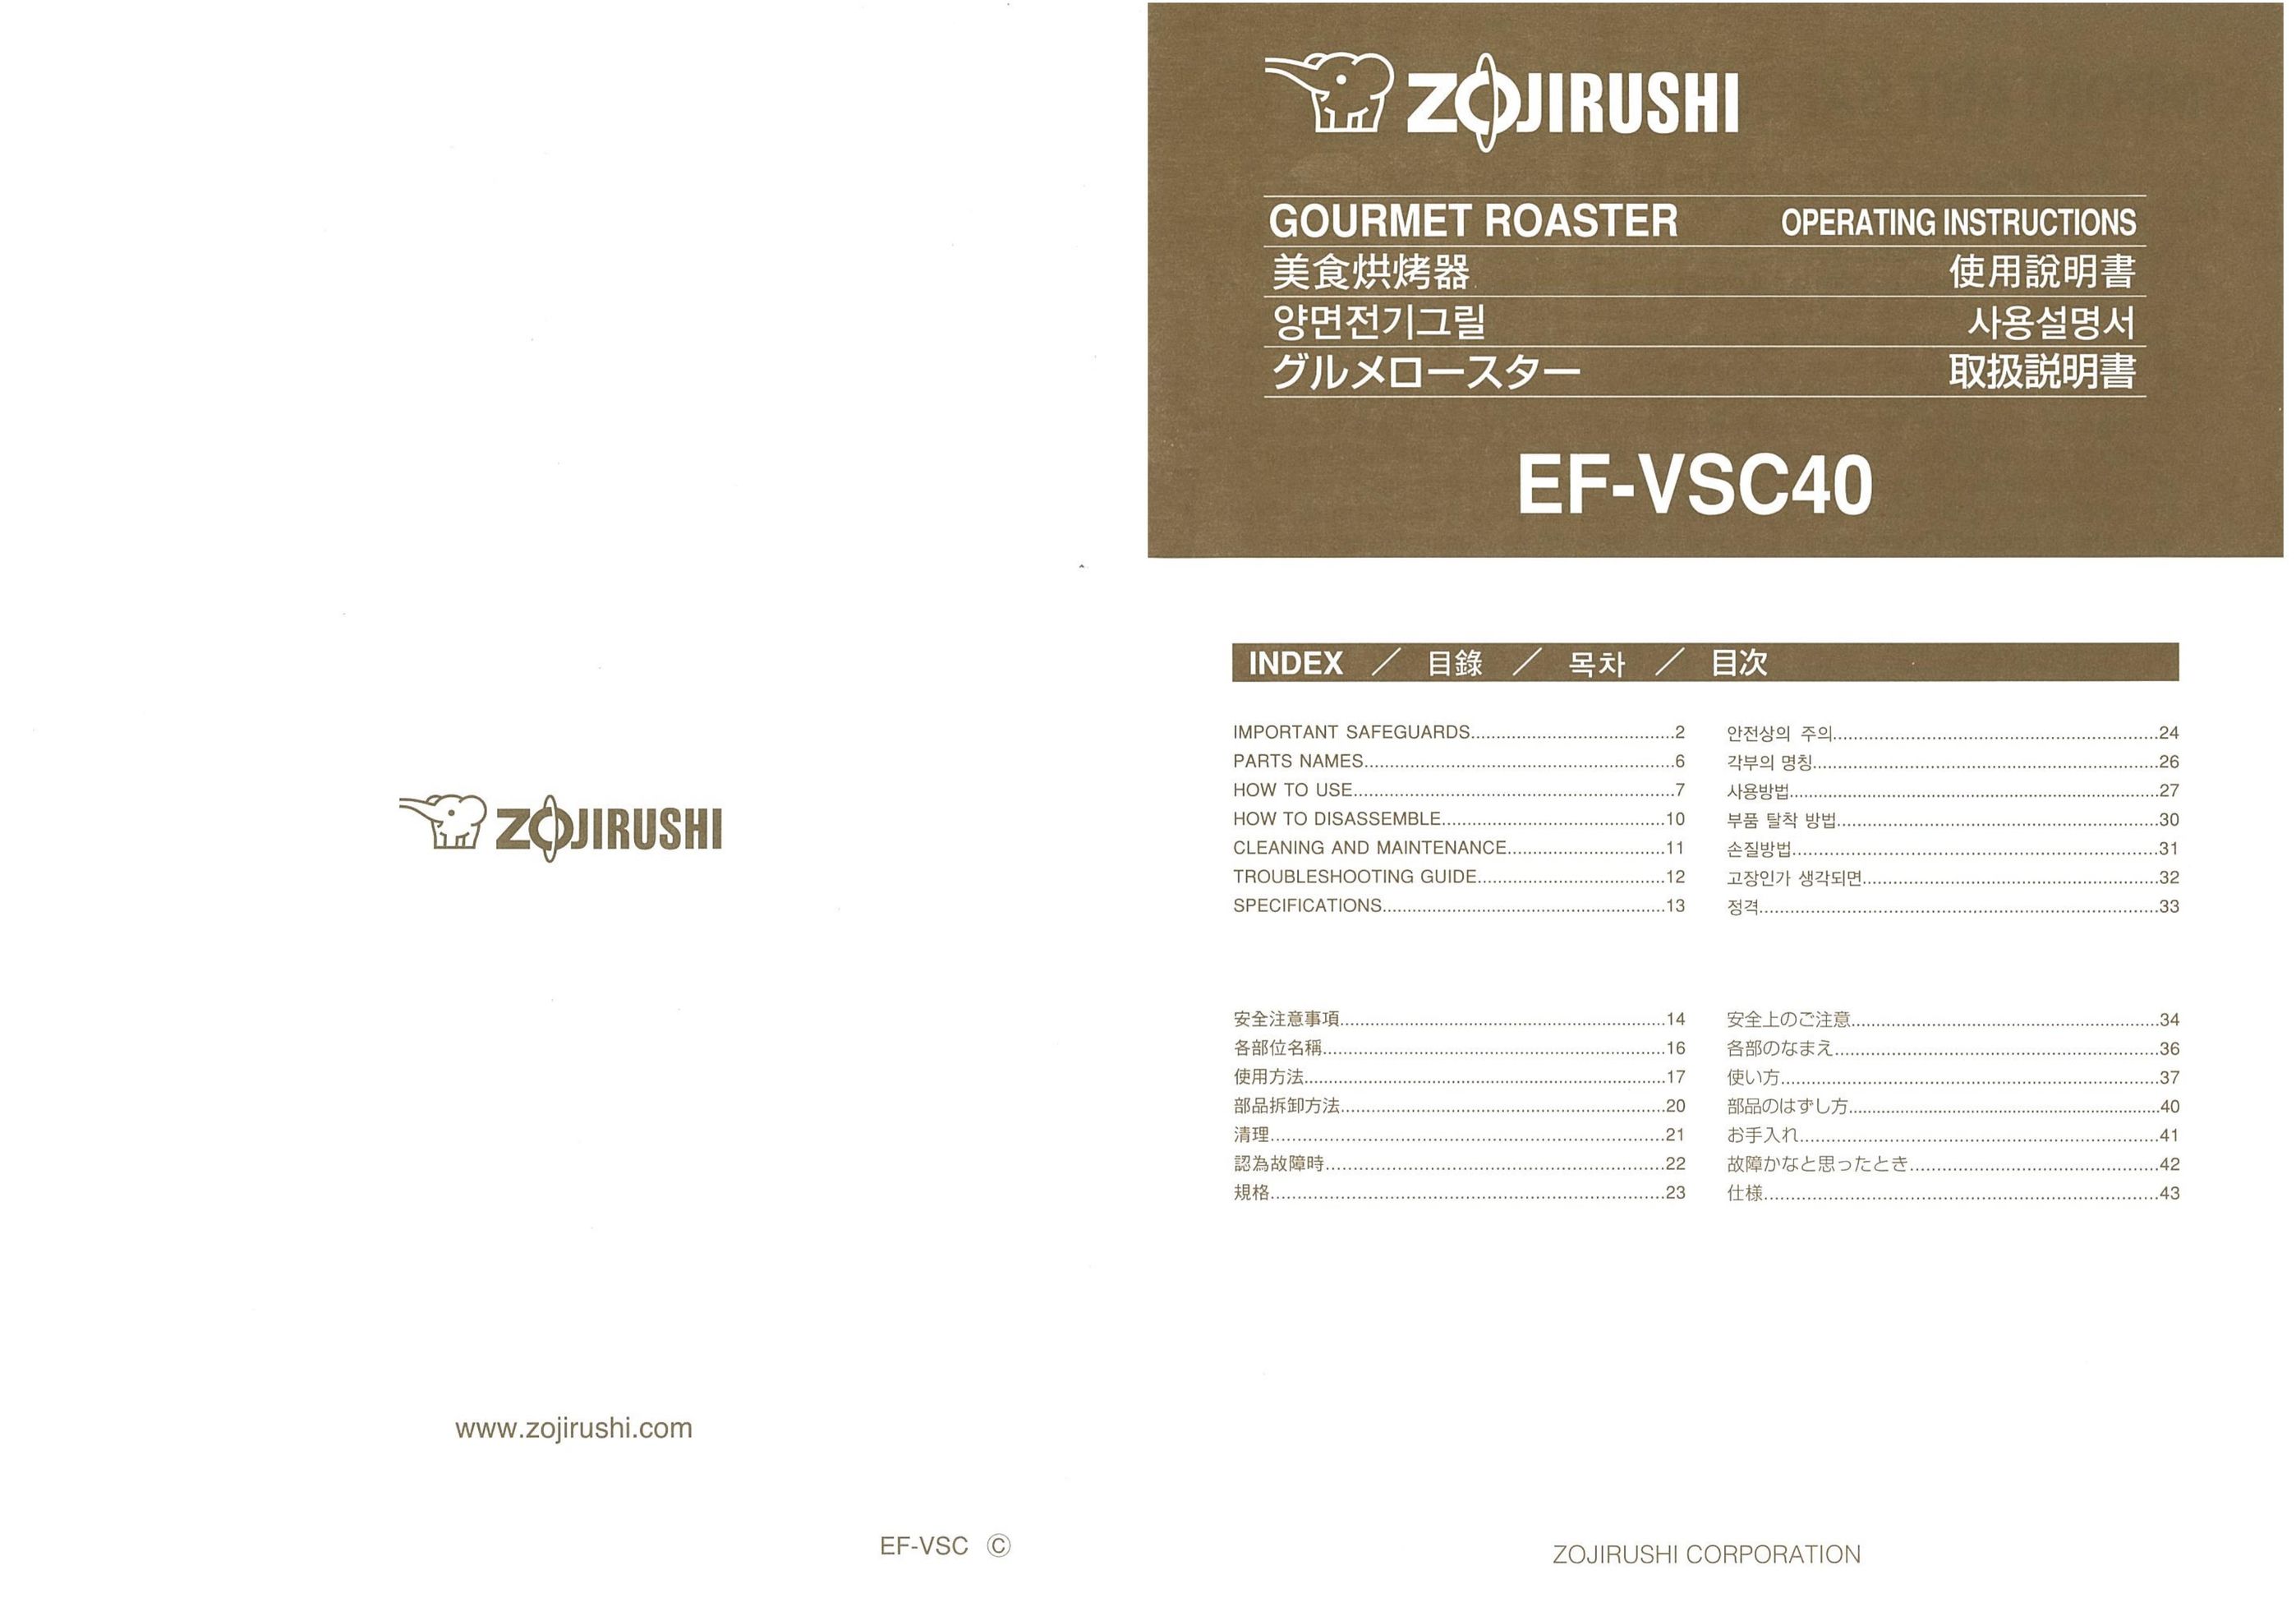 Zojirushi EF-VSC40 Oven User Manual